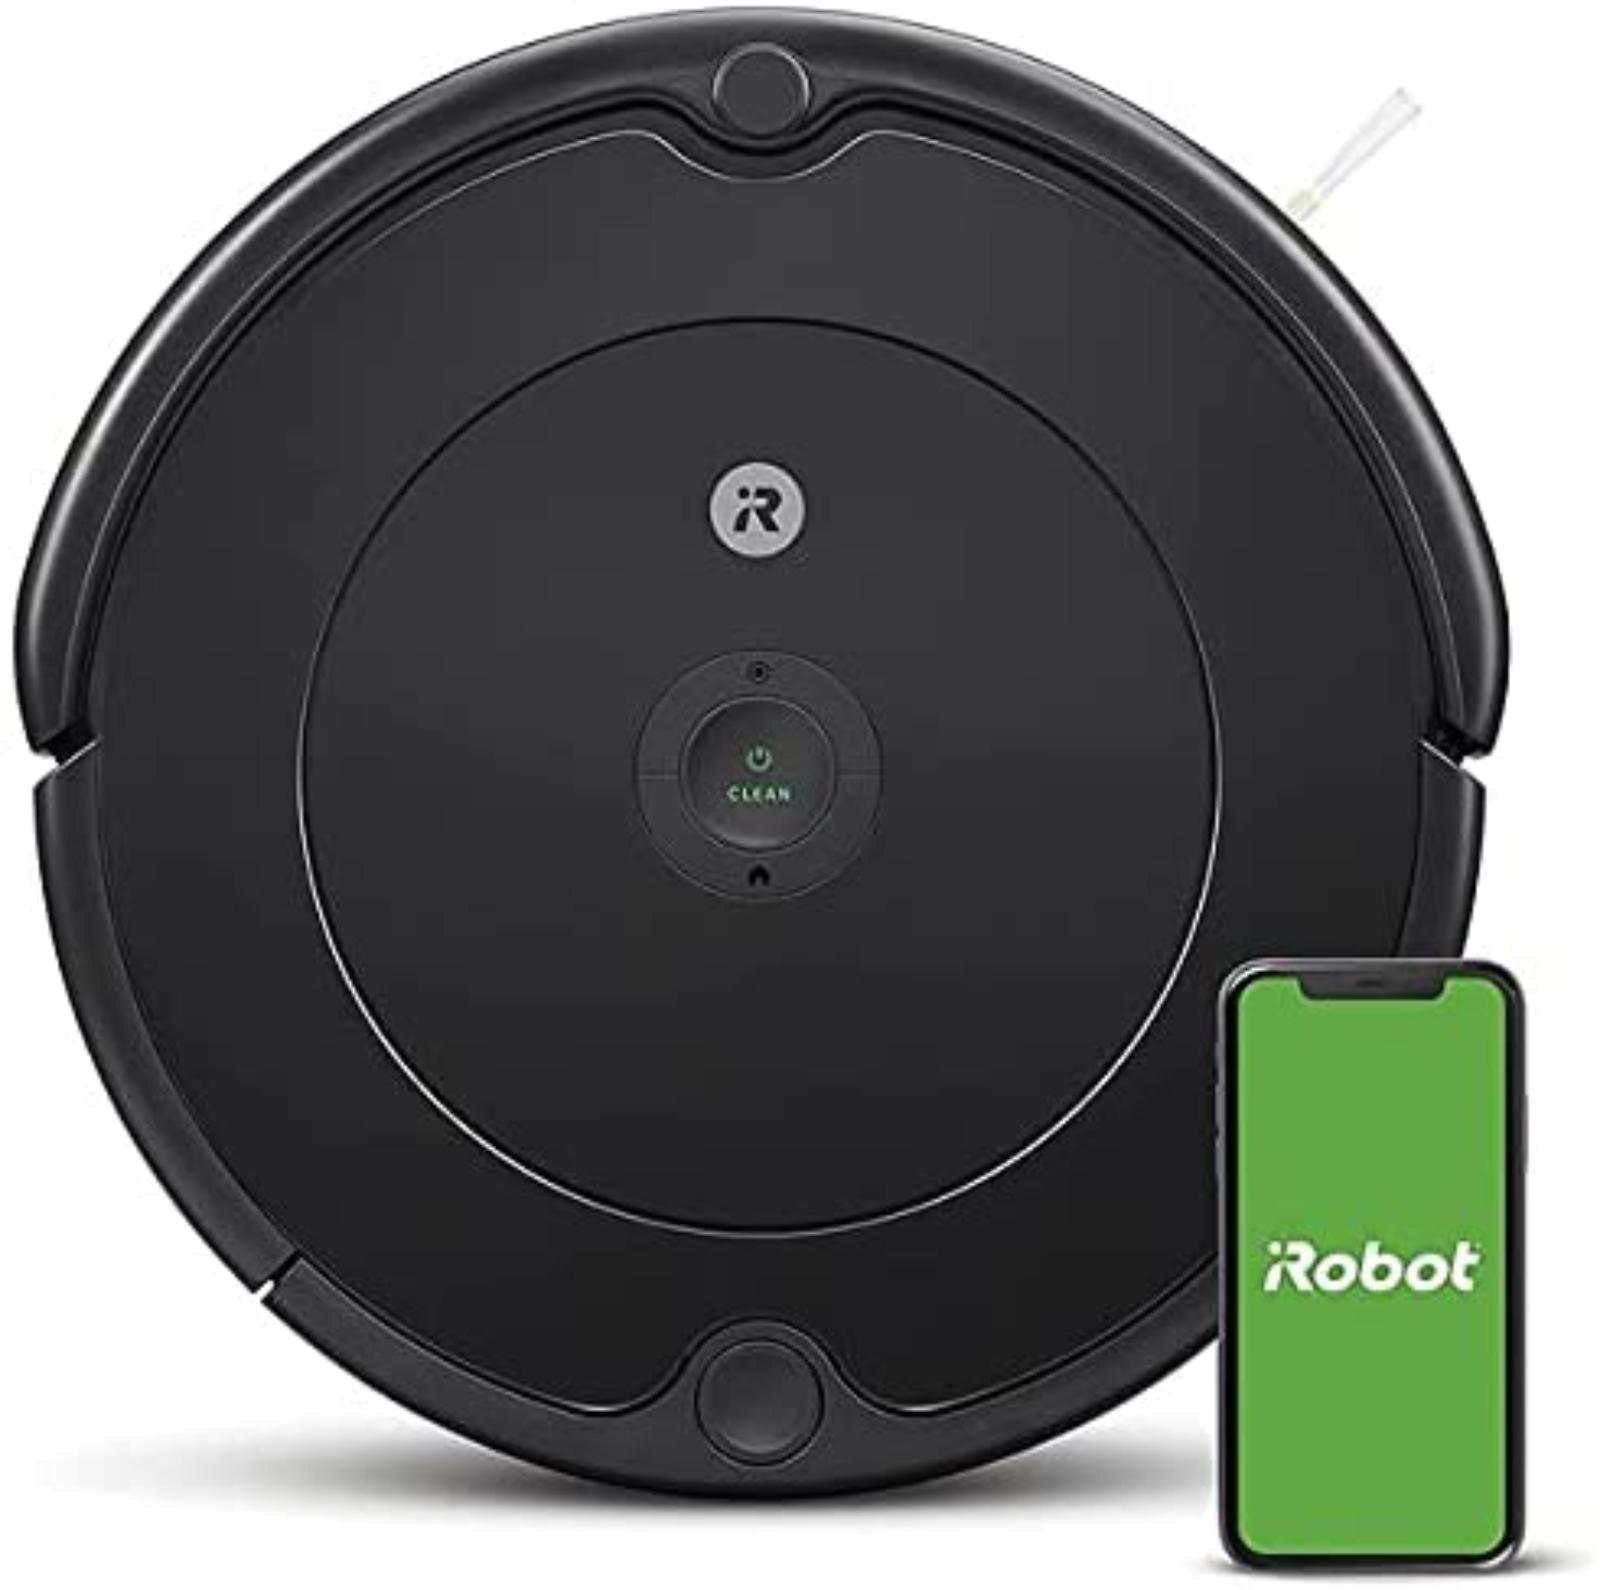 40% SLEVA! Nový robotický vysavač iRobot Roomba 692, černá - Malé elektrospotrebiče